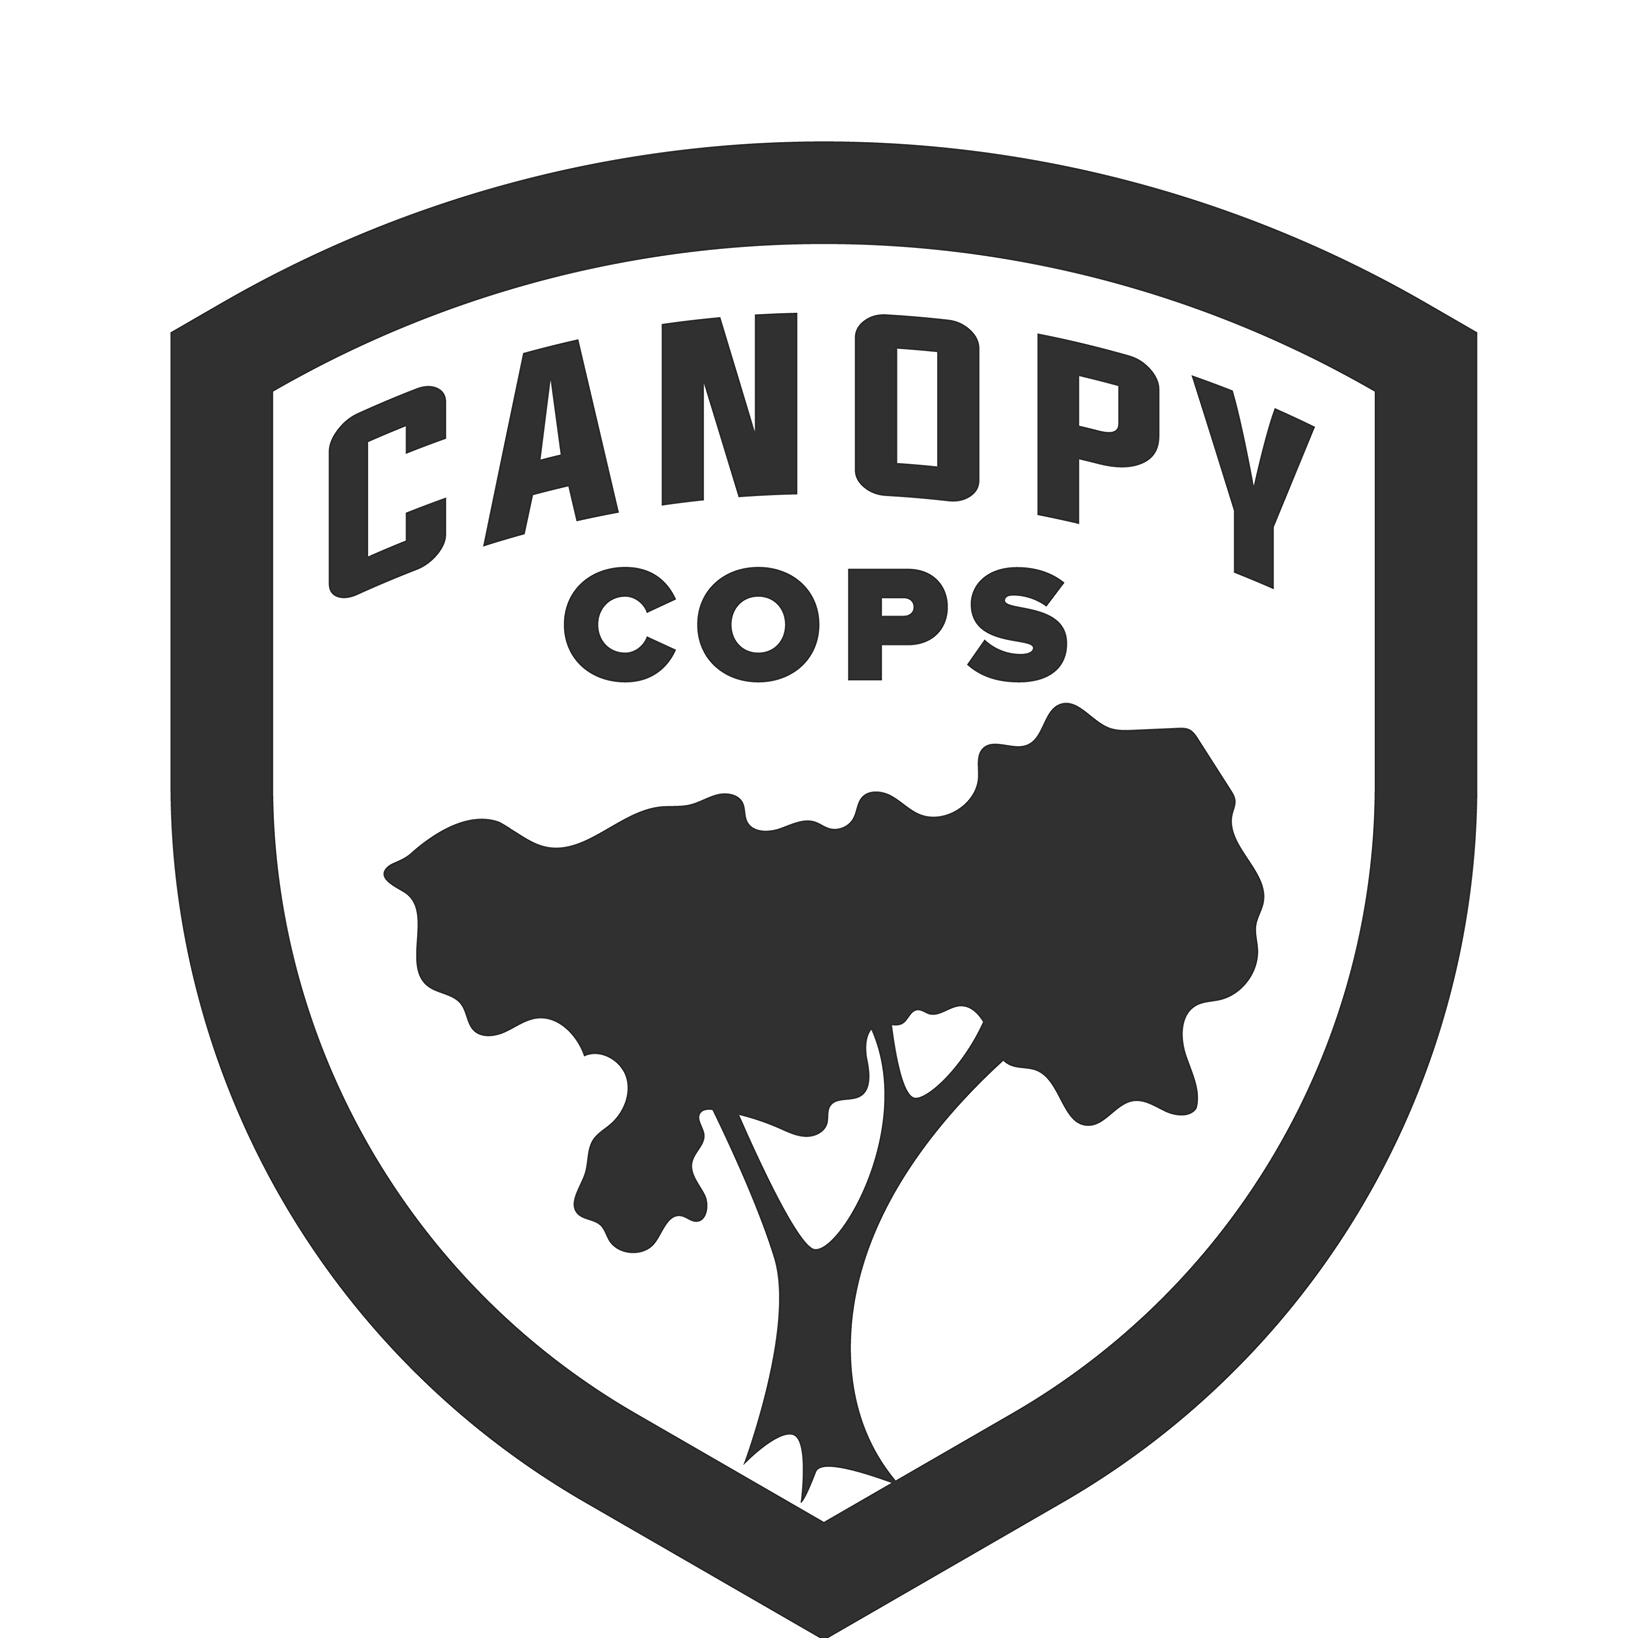 Canopy Cops